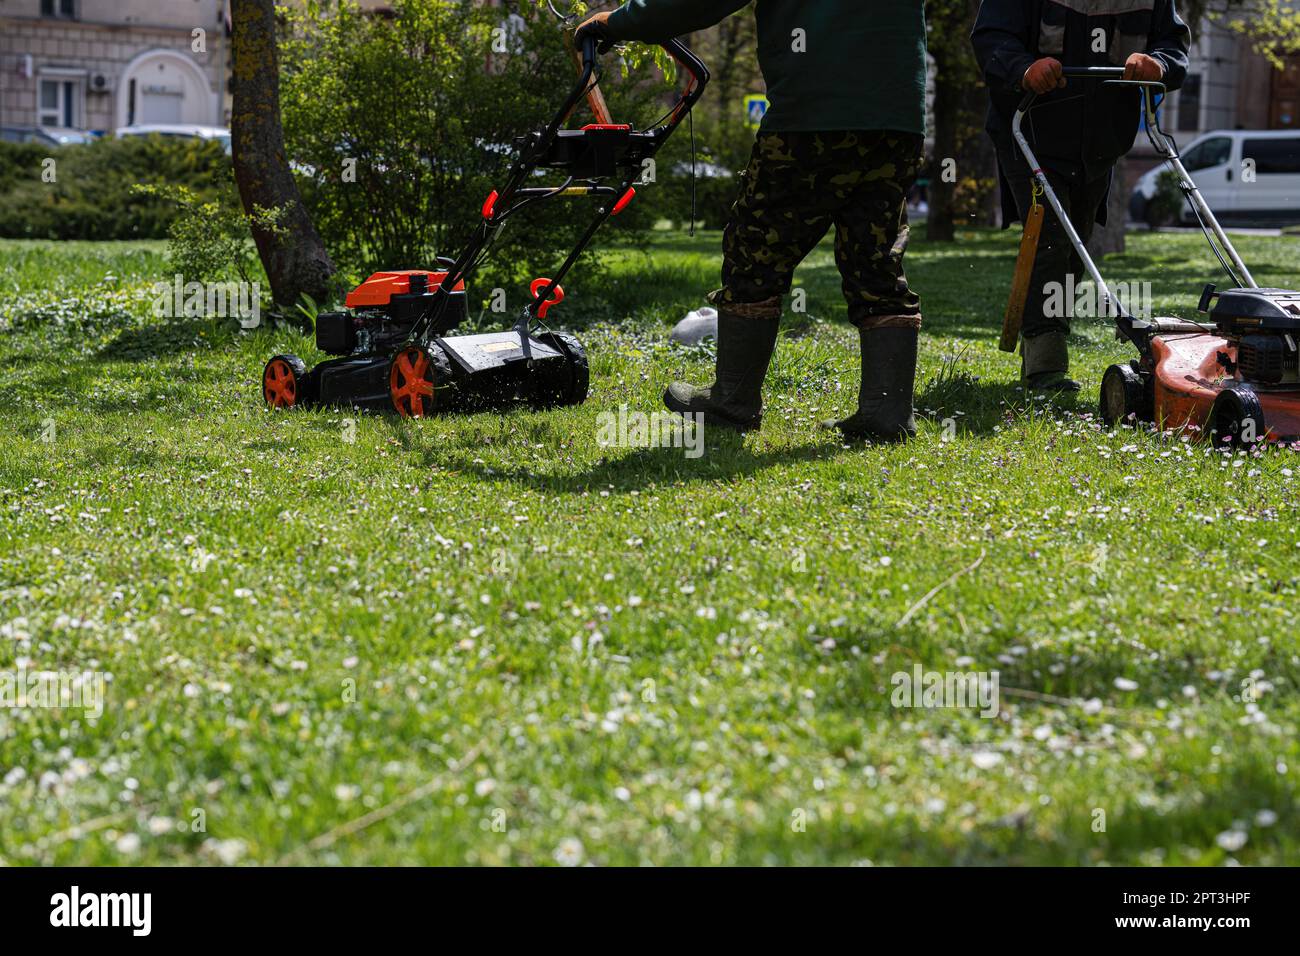 Gärtner für kommunale Dienstleistungen Mann, der Rasenmäher zum Rasenmähen  im Stadtpark verwendet Stockfotografie - Alamy